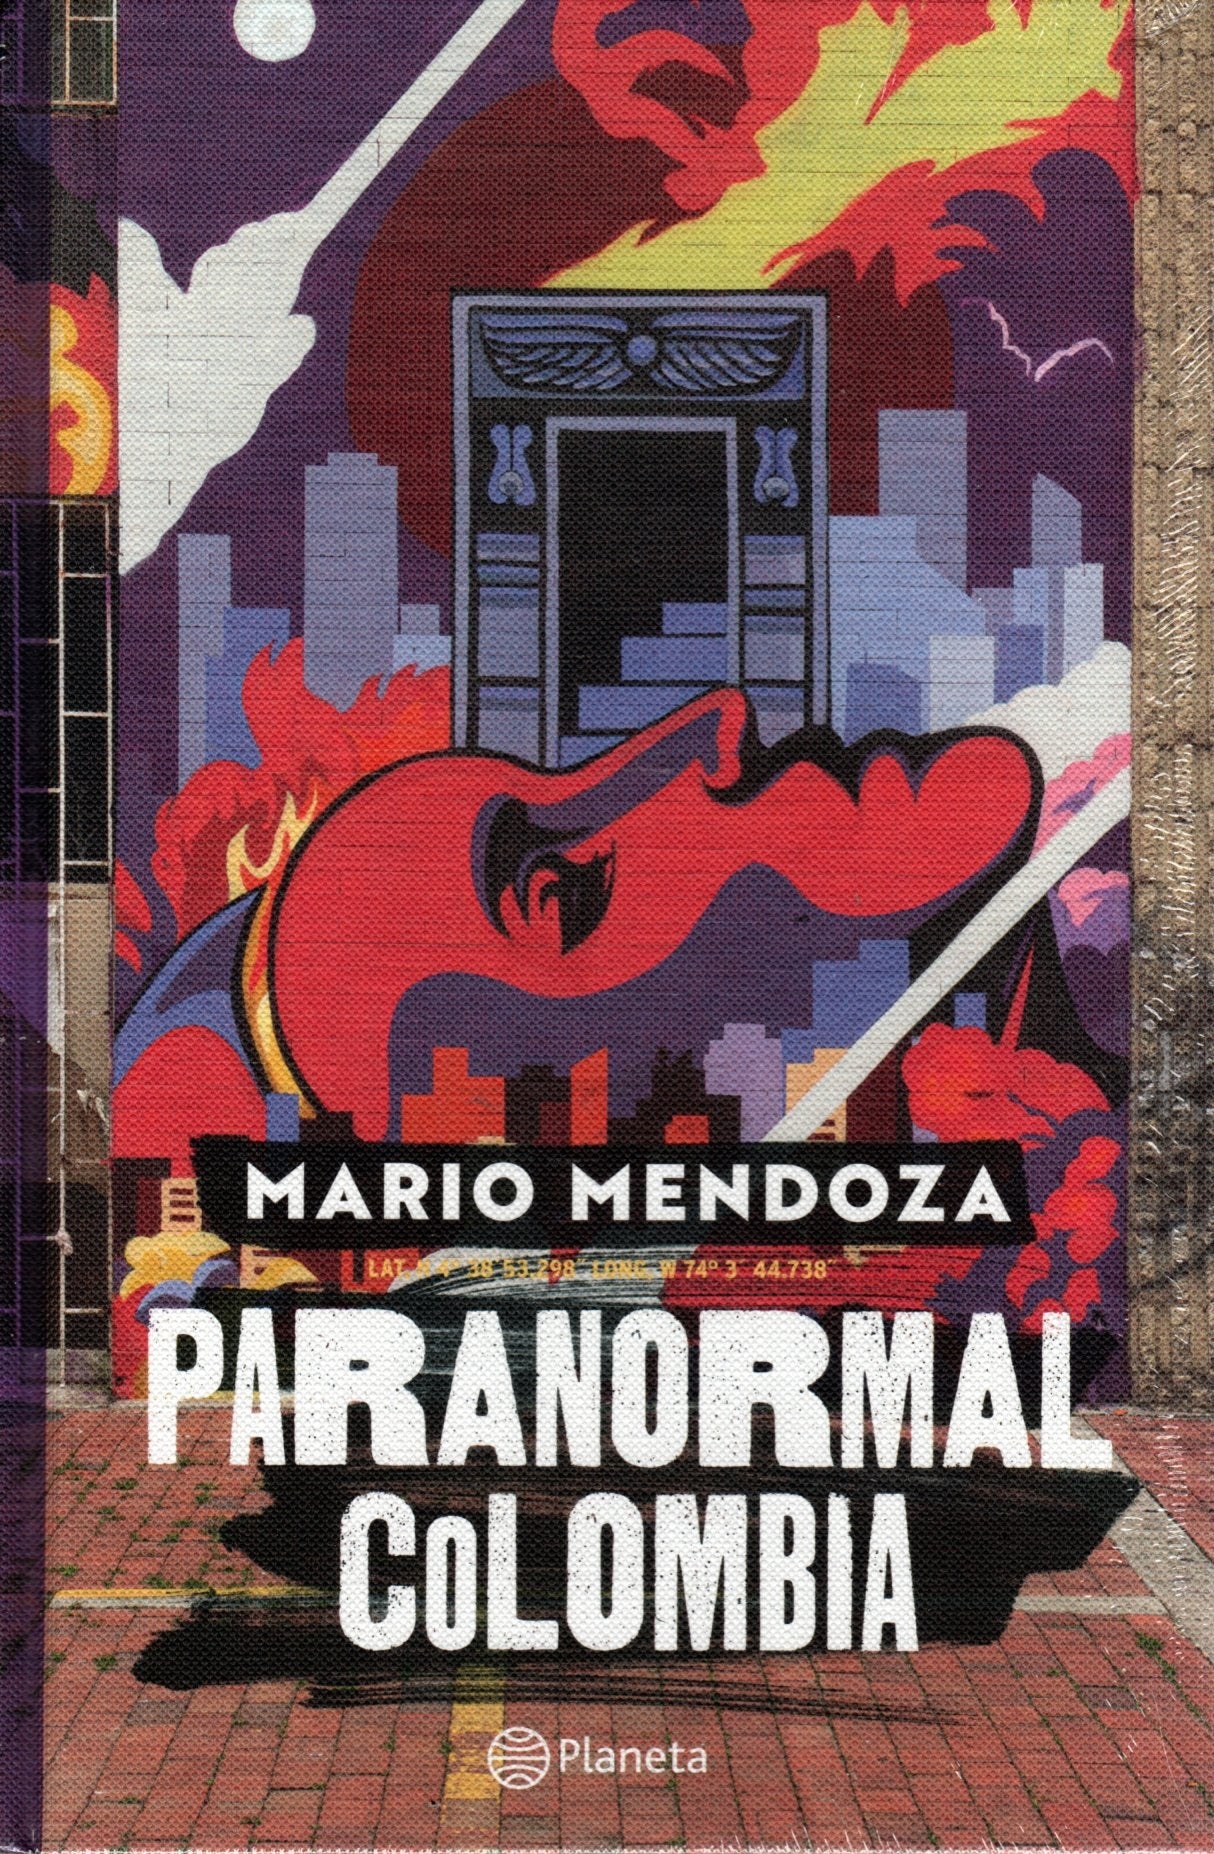 Libro Mario Mendoza - Paranormal Colombia